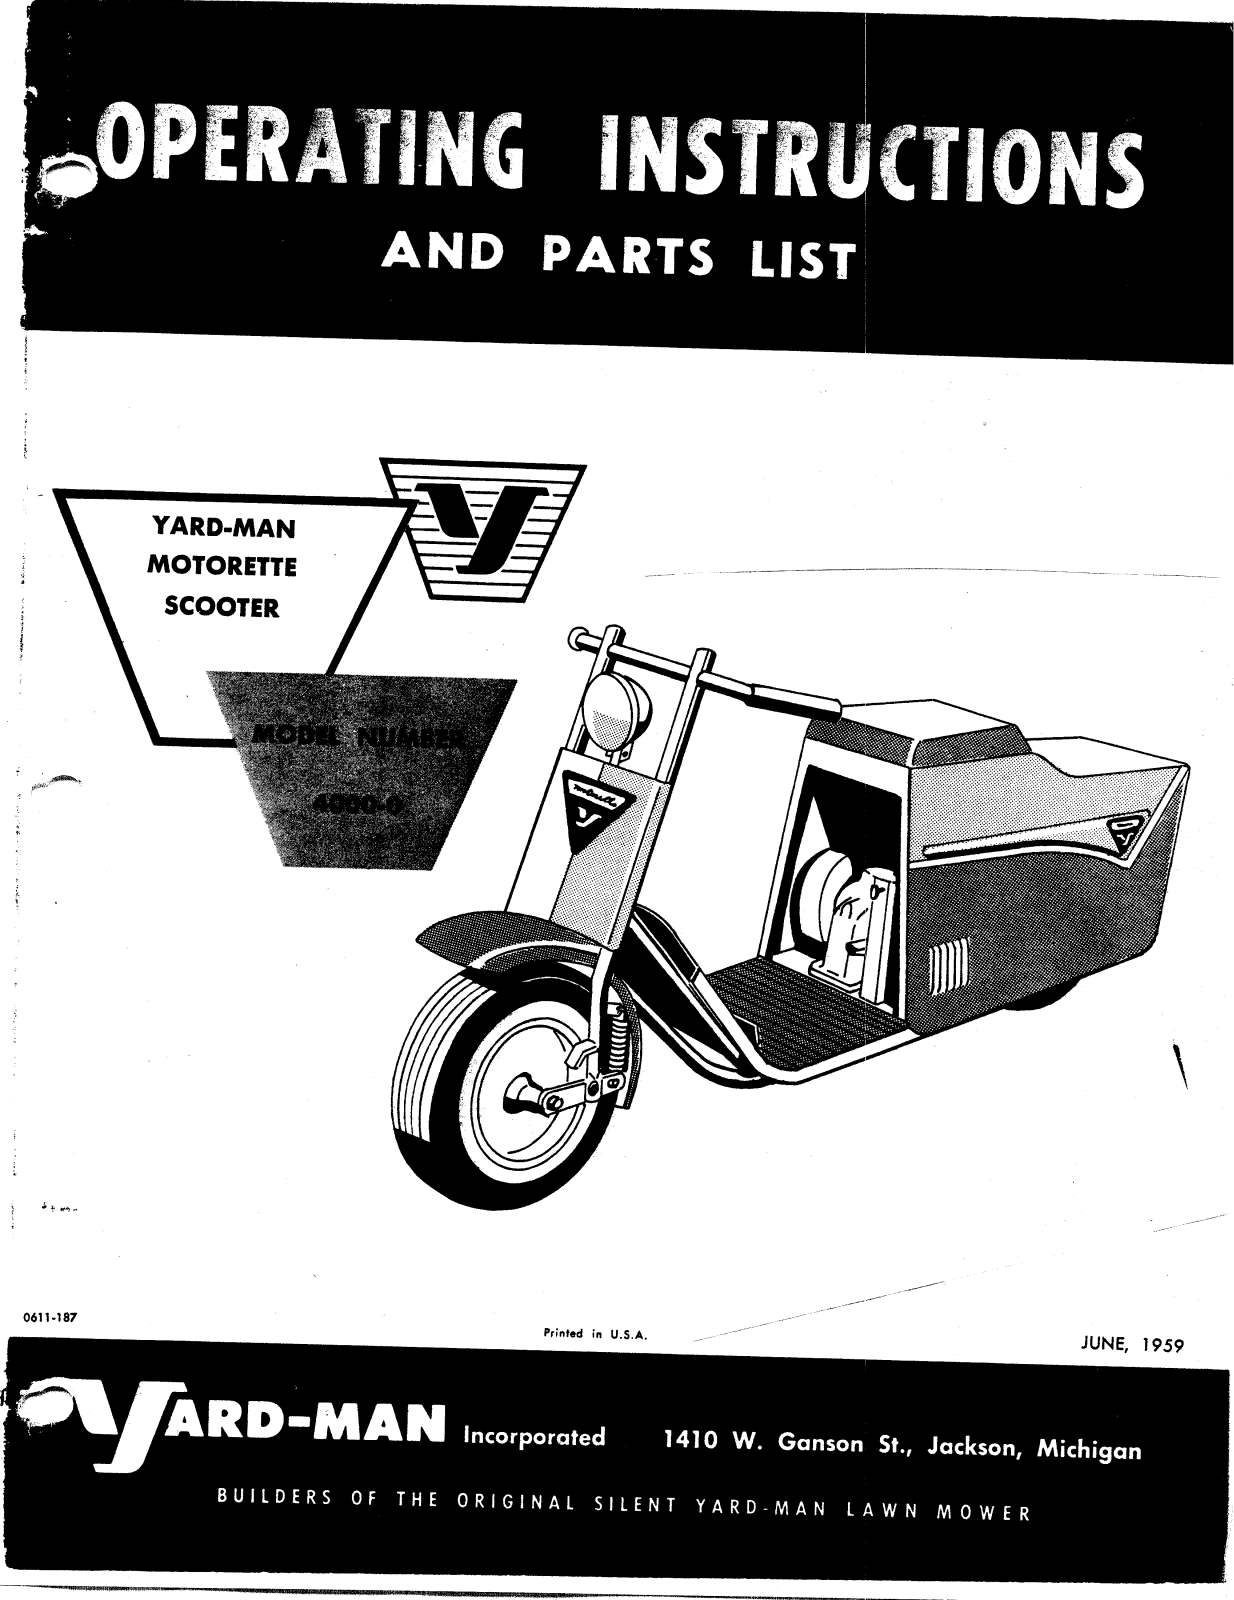 Yard-man 4000-0 owners manual